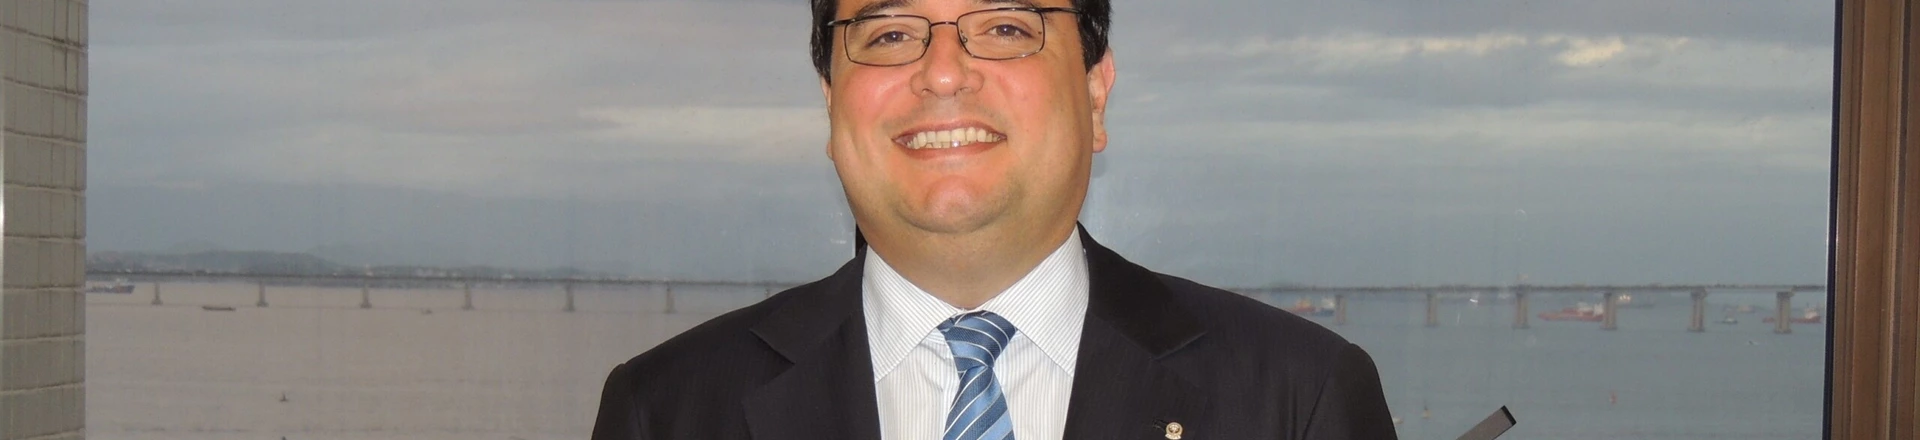 Fabrício Fernandes de Castro, presidente da Associação de Juízes Federais do RJ e ES.